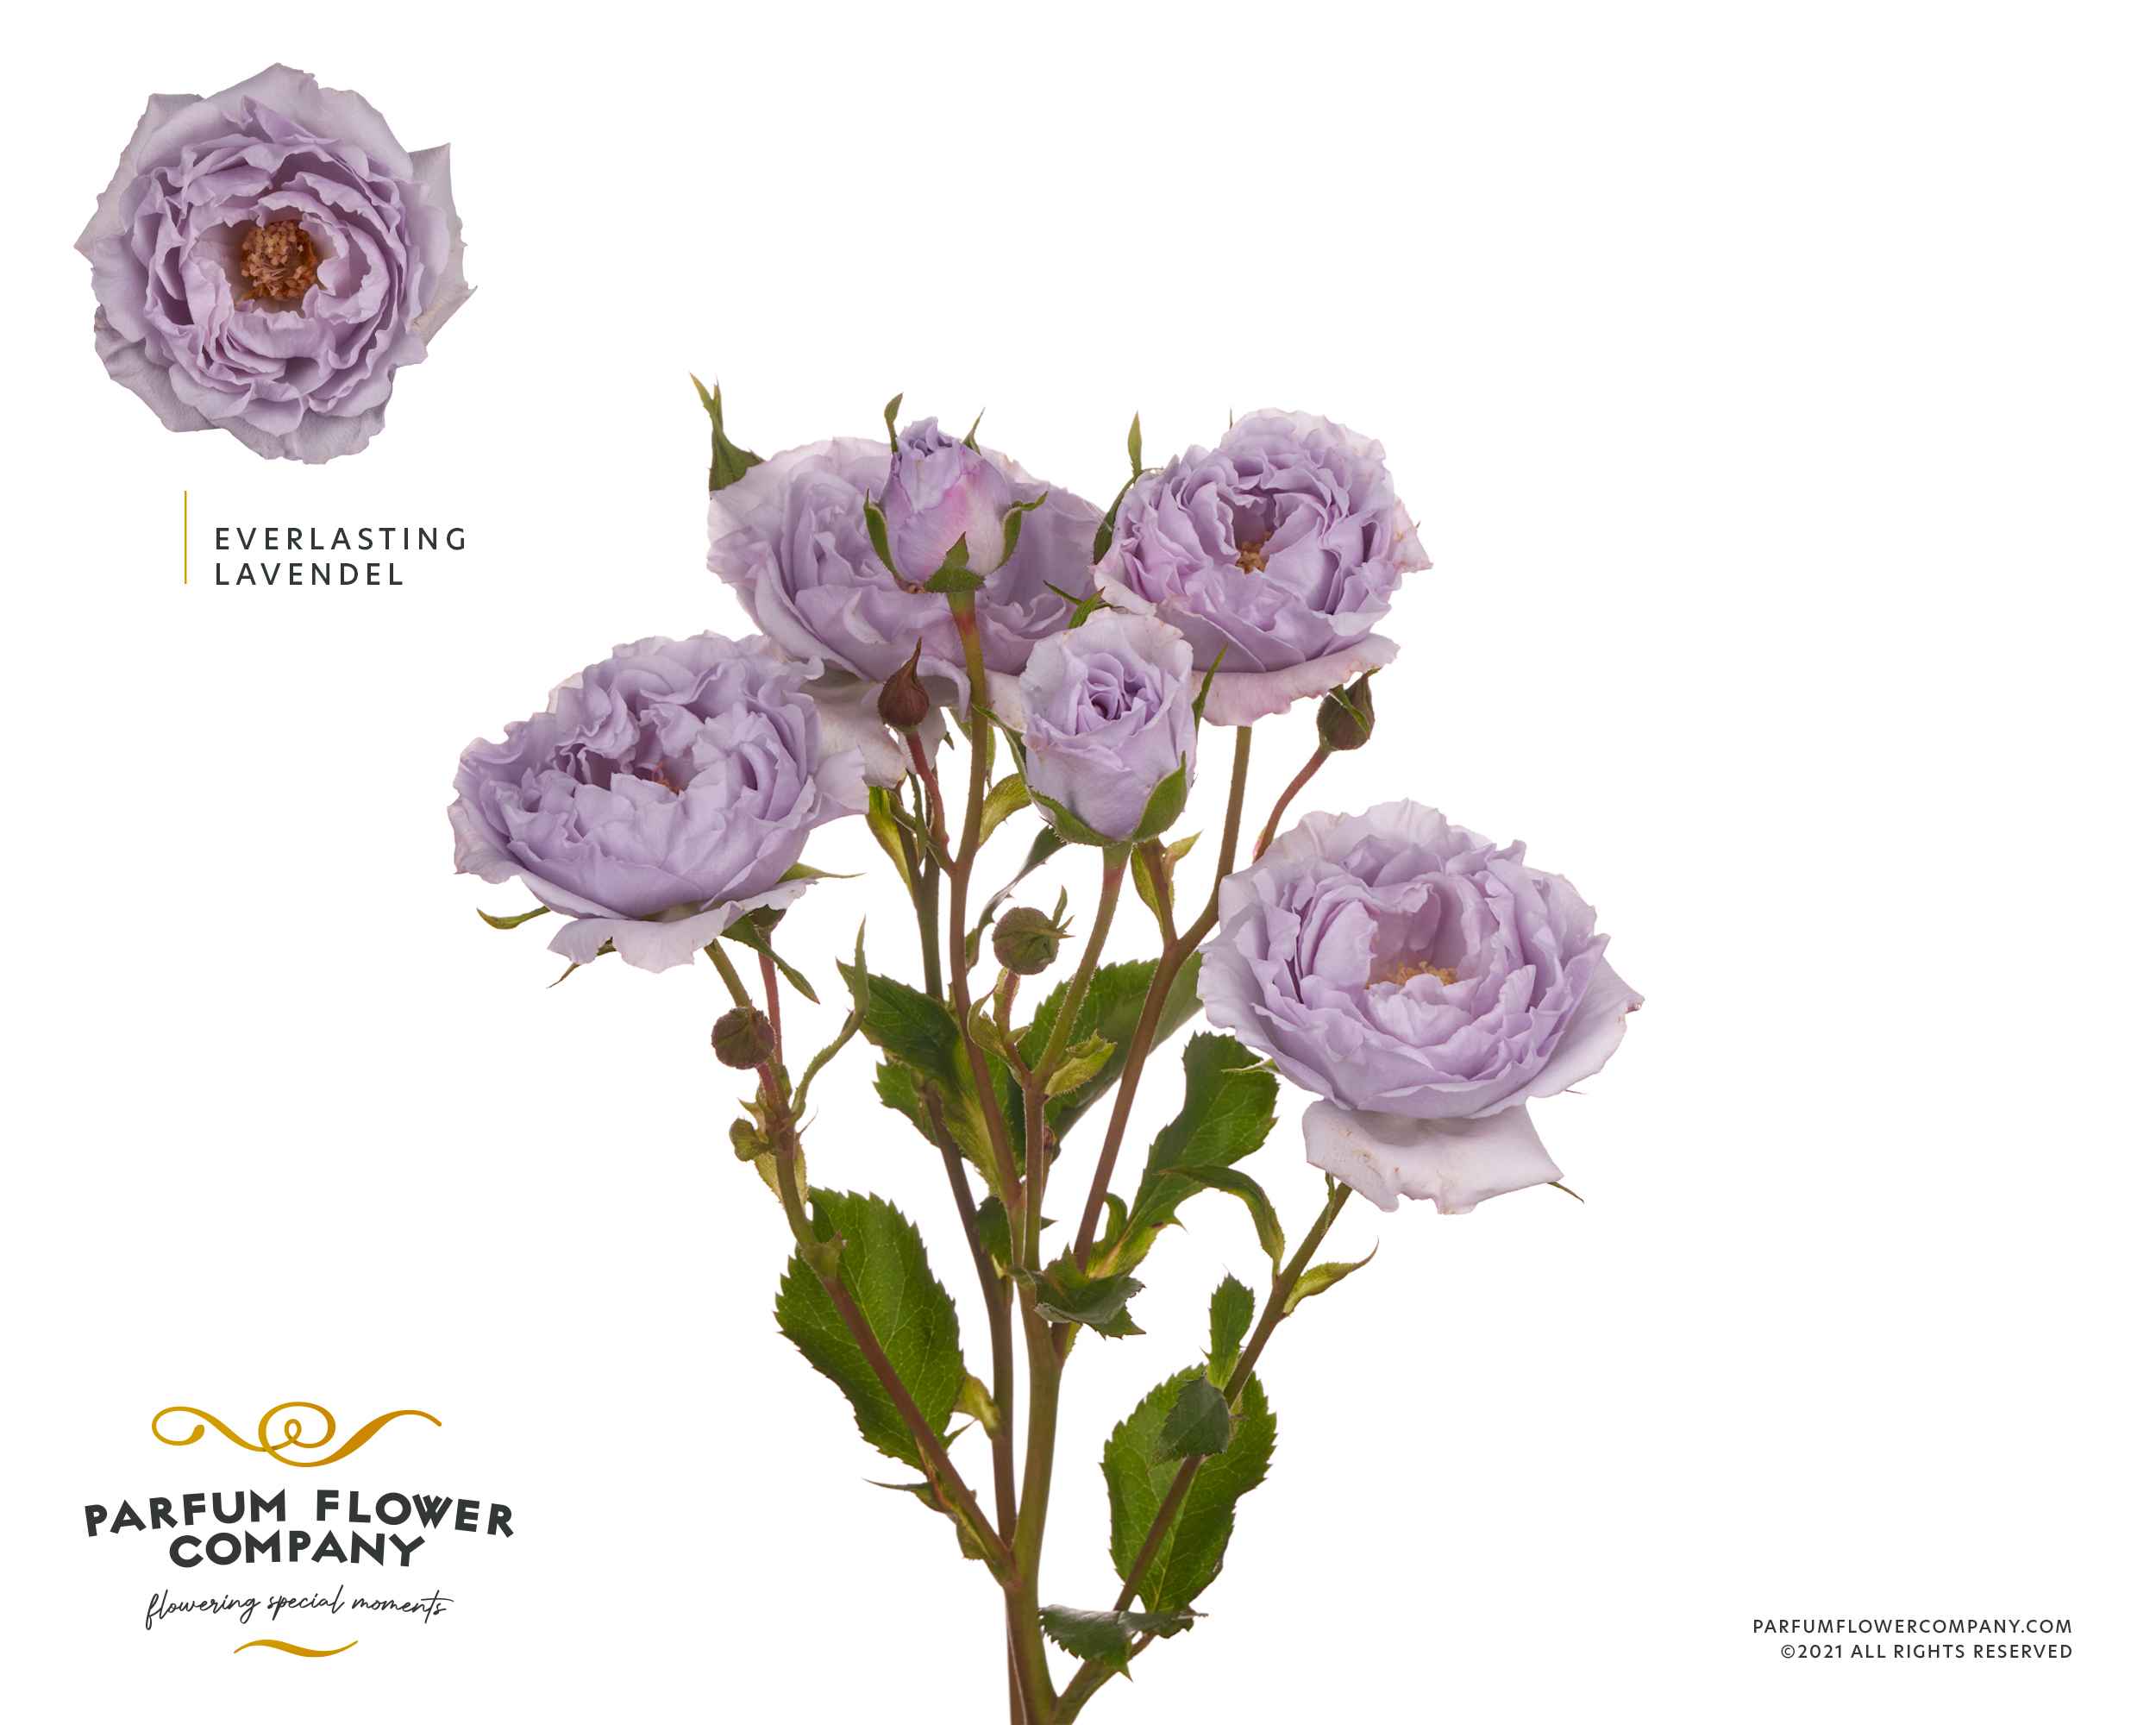 Срезанные цветы оптом Rosa sp garden everlasting lavender от 36шт из Голландии с доставкой по России